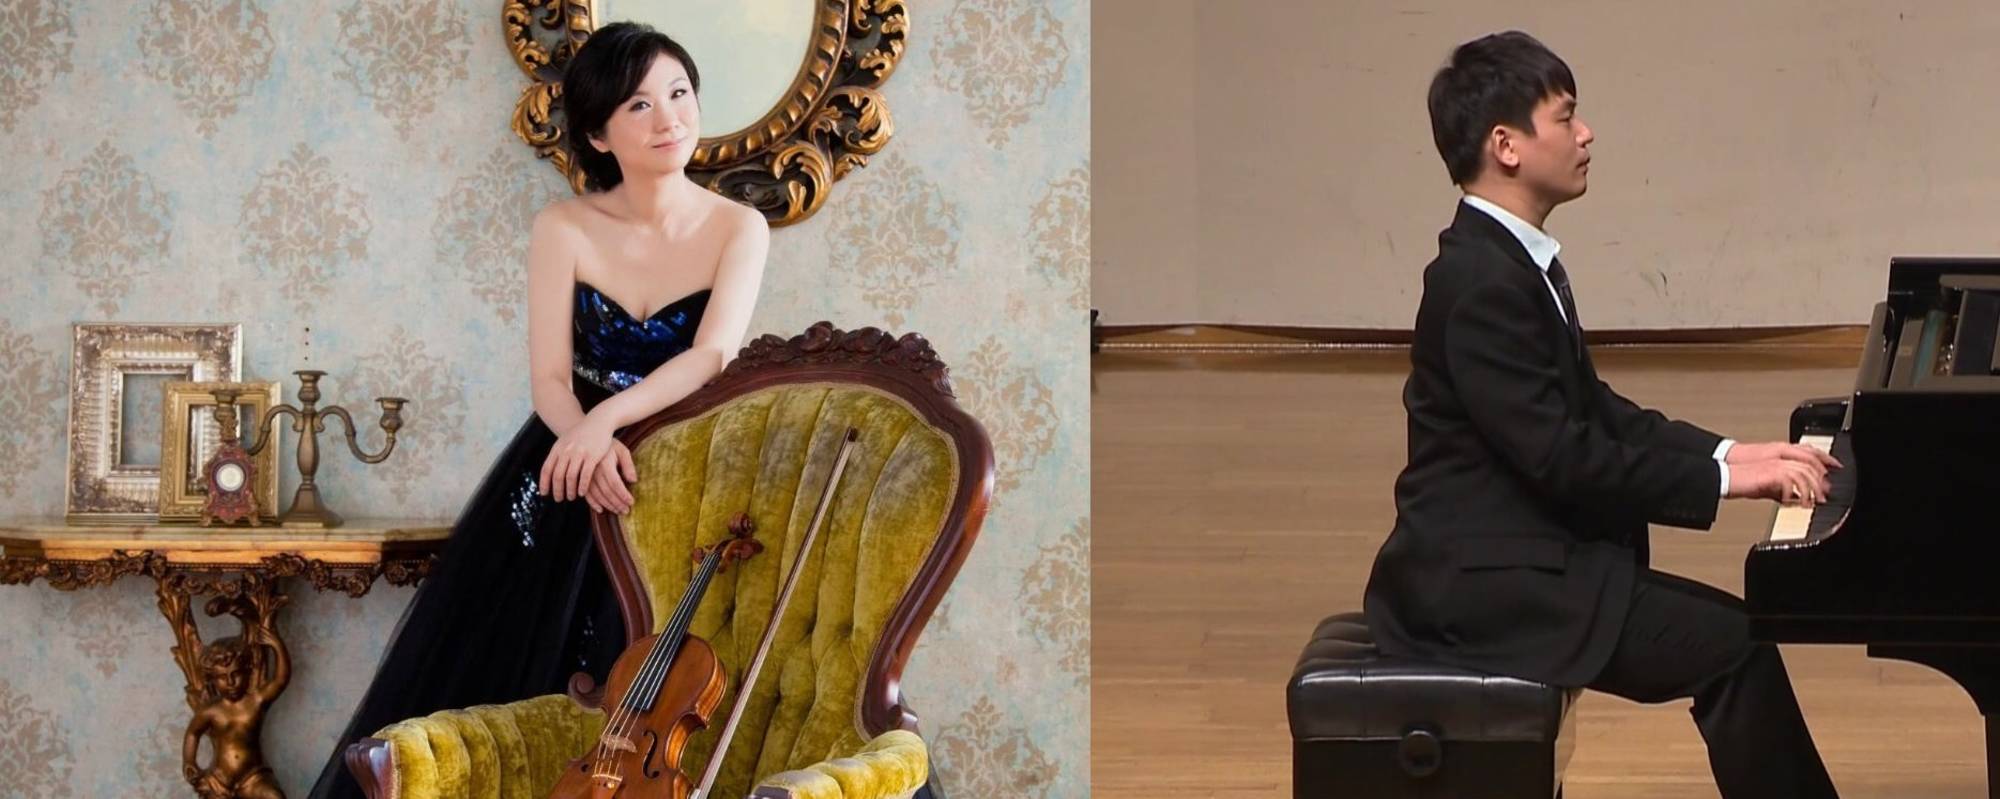 les étoiles mélodique-2019 HSU Su-lan Violin Recital